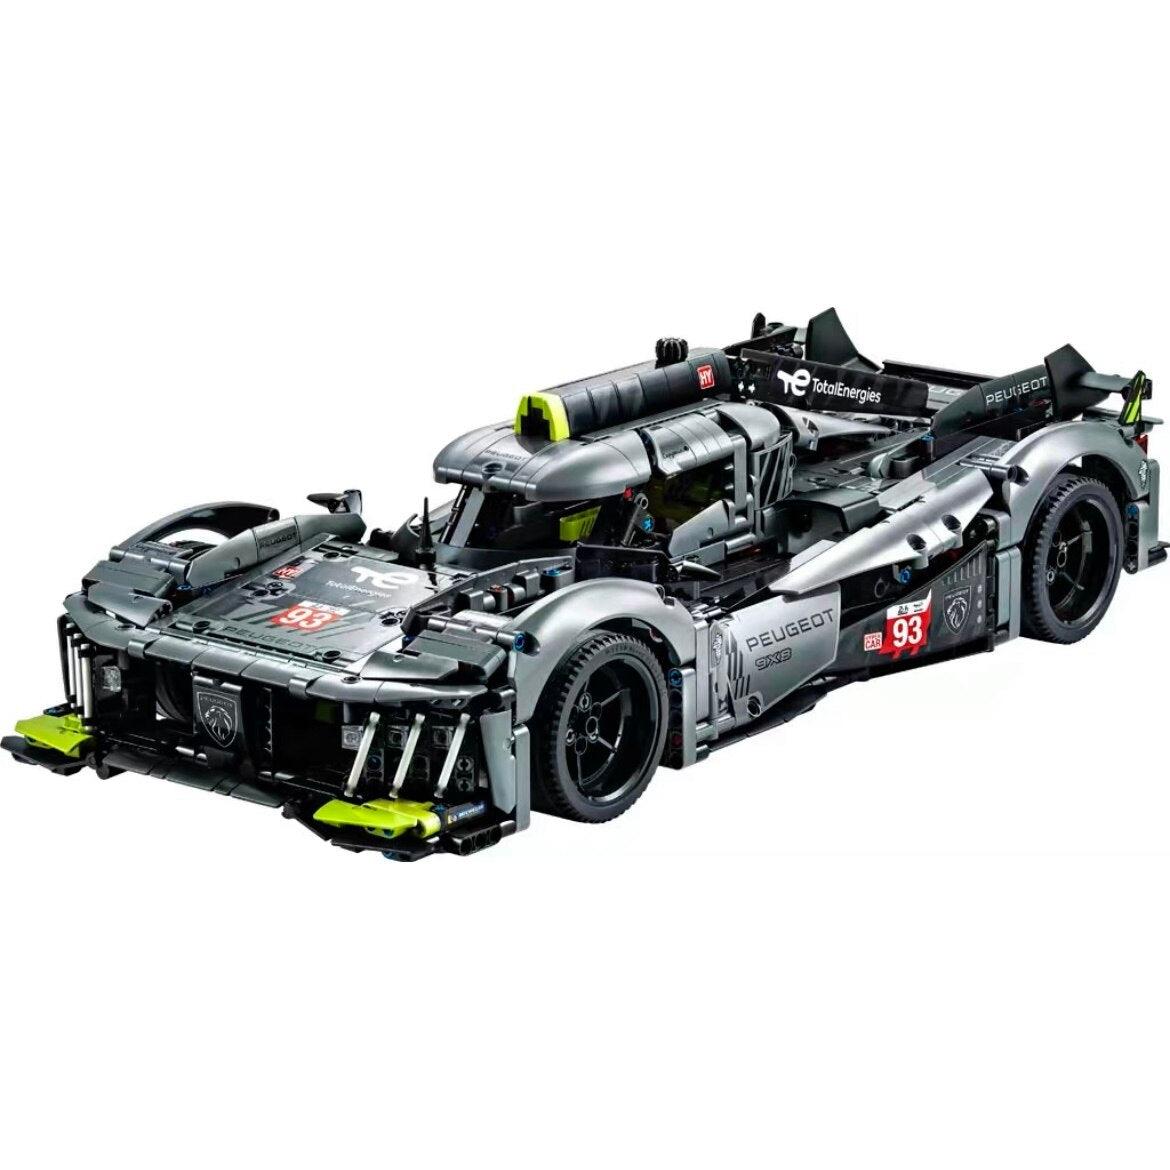 Peugeot 9X8 24H Le Mans s set, compatible with Lego